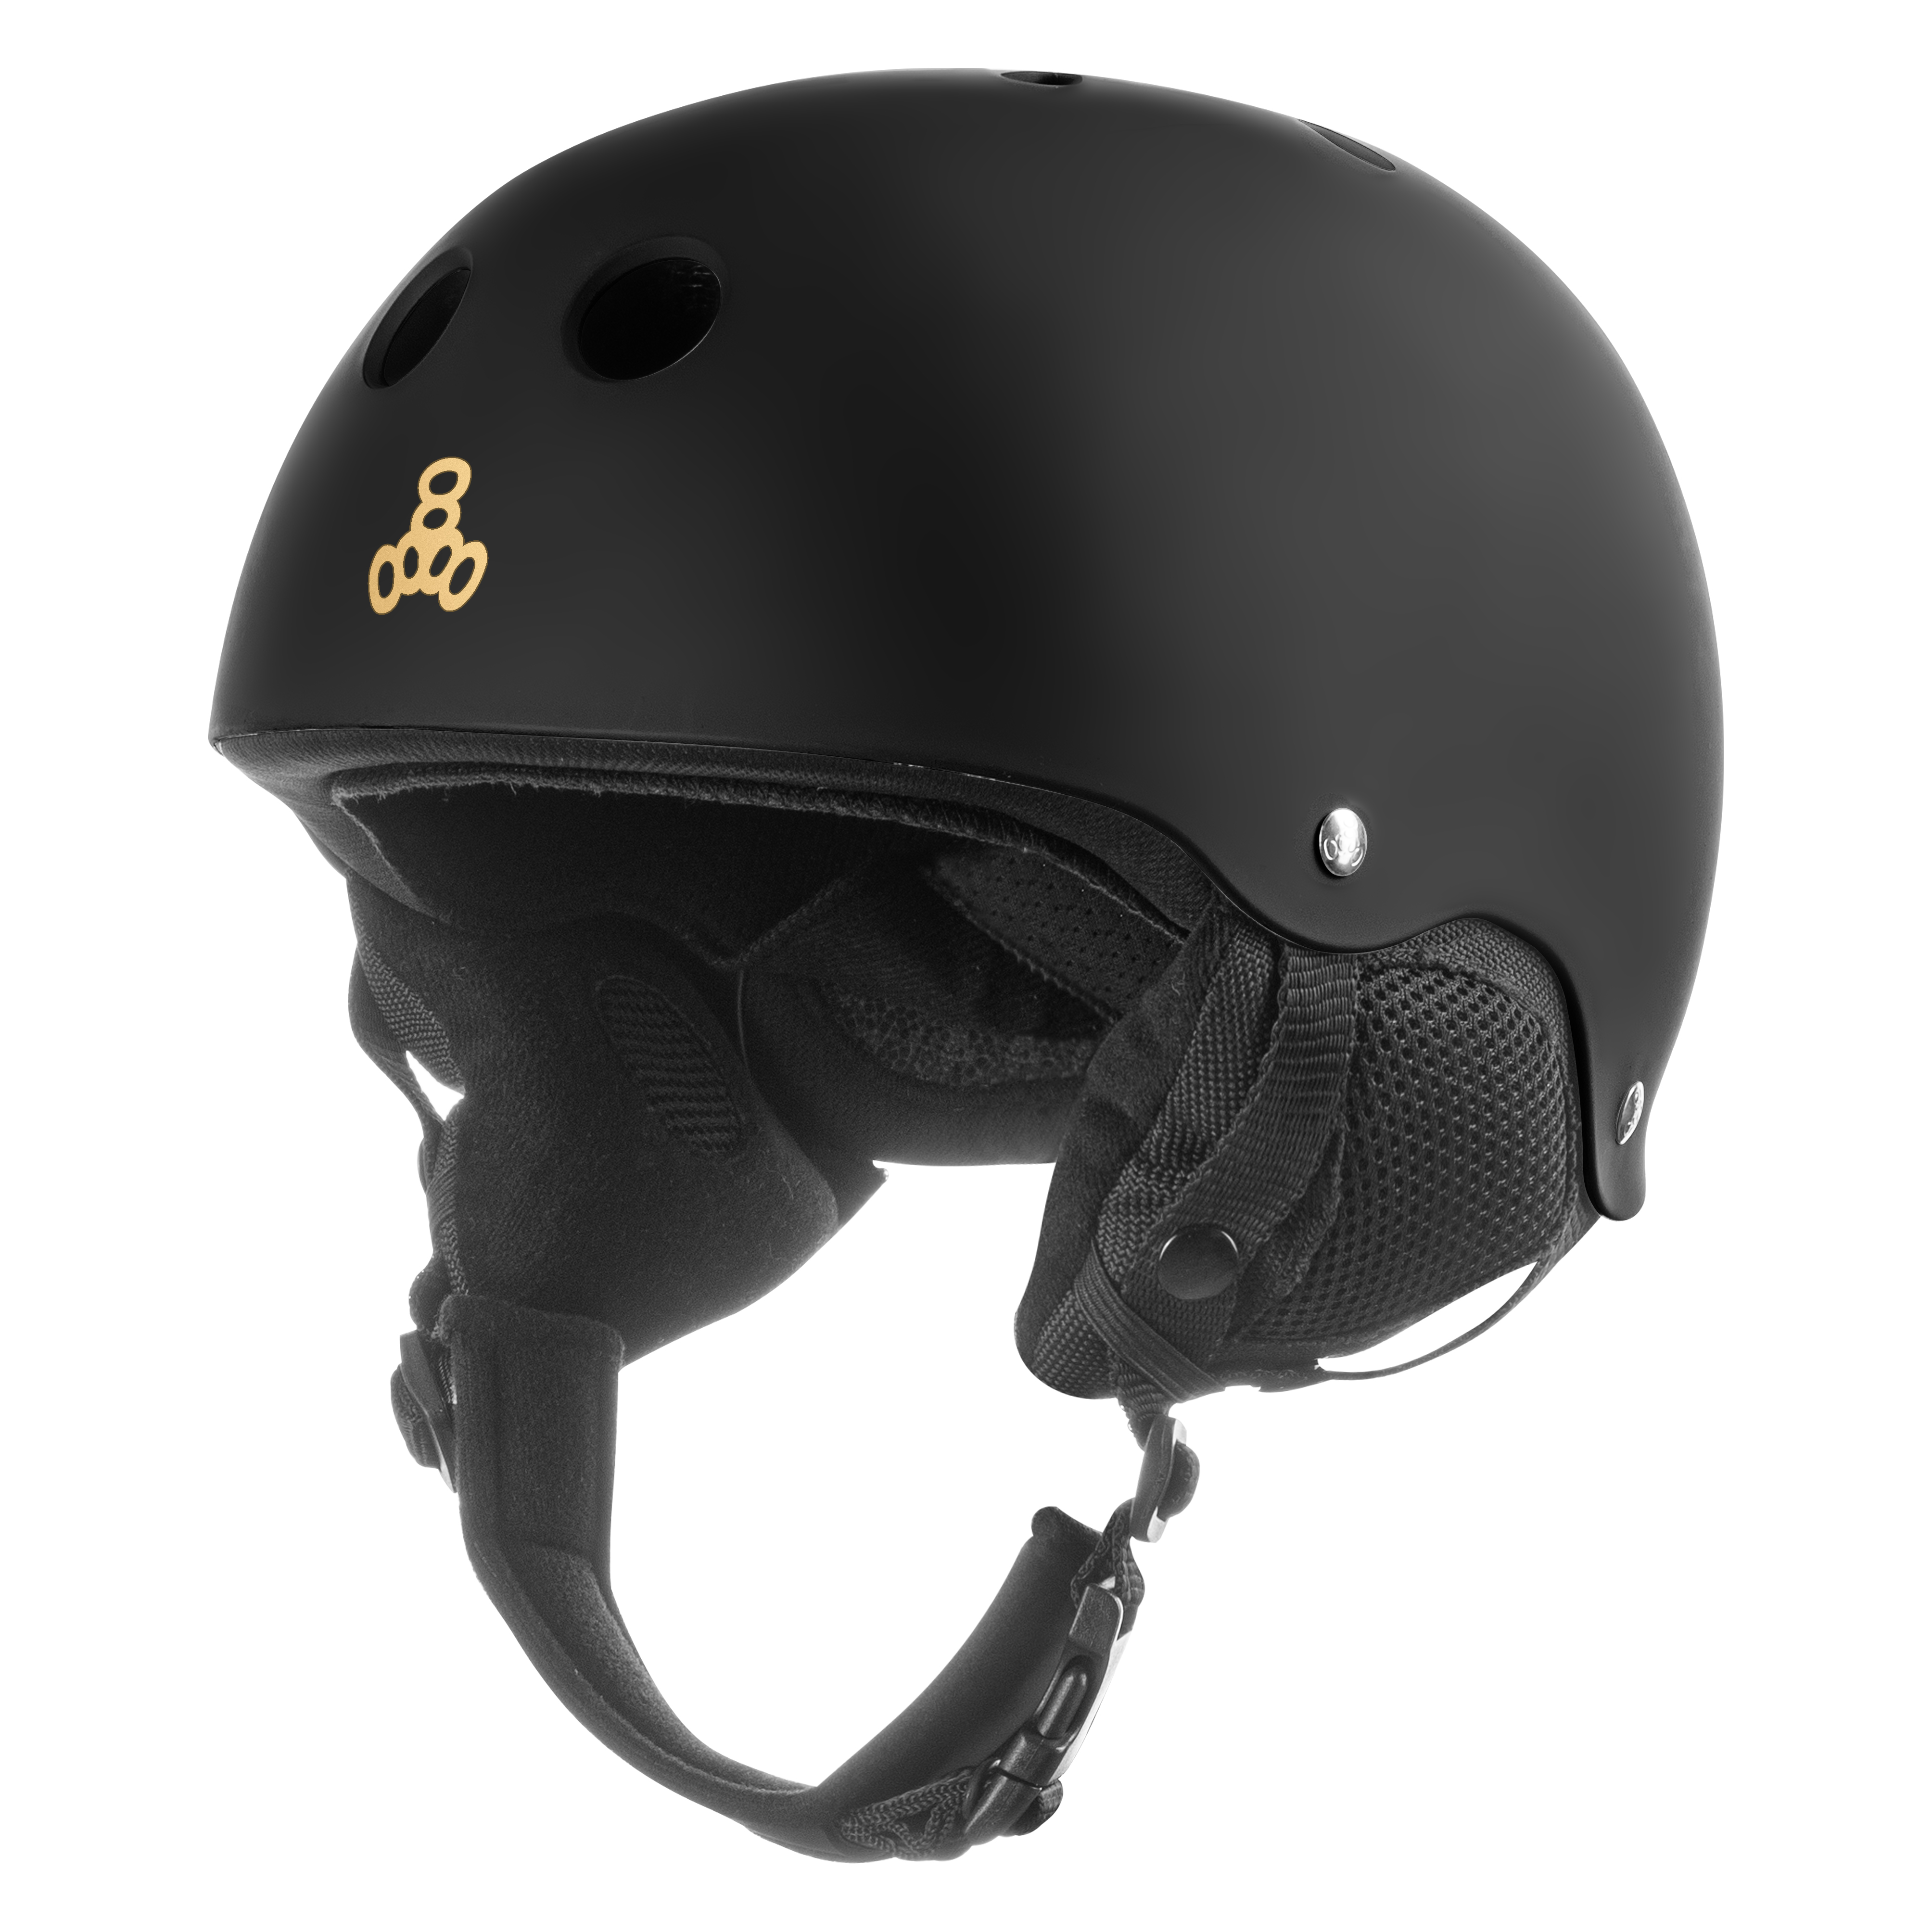 Зимний защитный шлем Triple8 Old School Snow Black Rubber (XS)